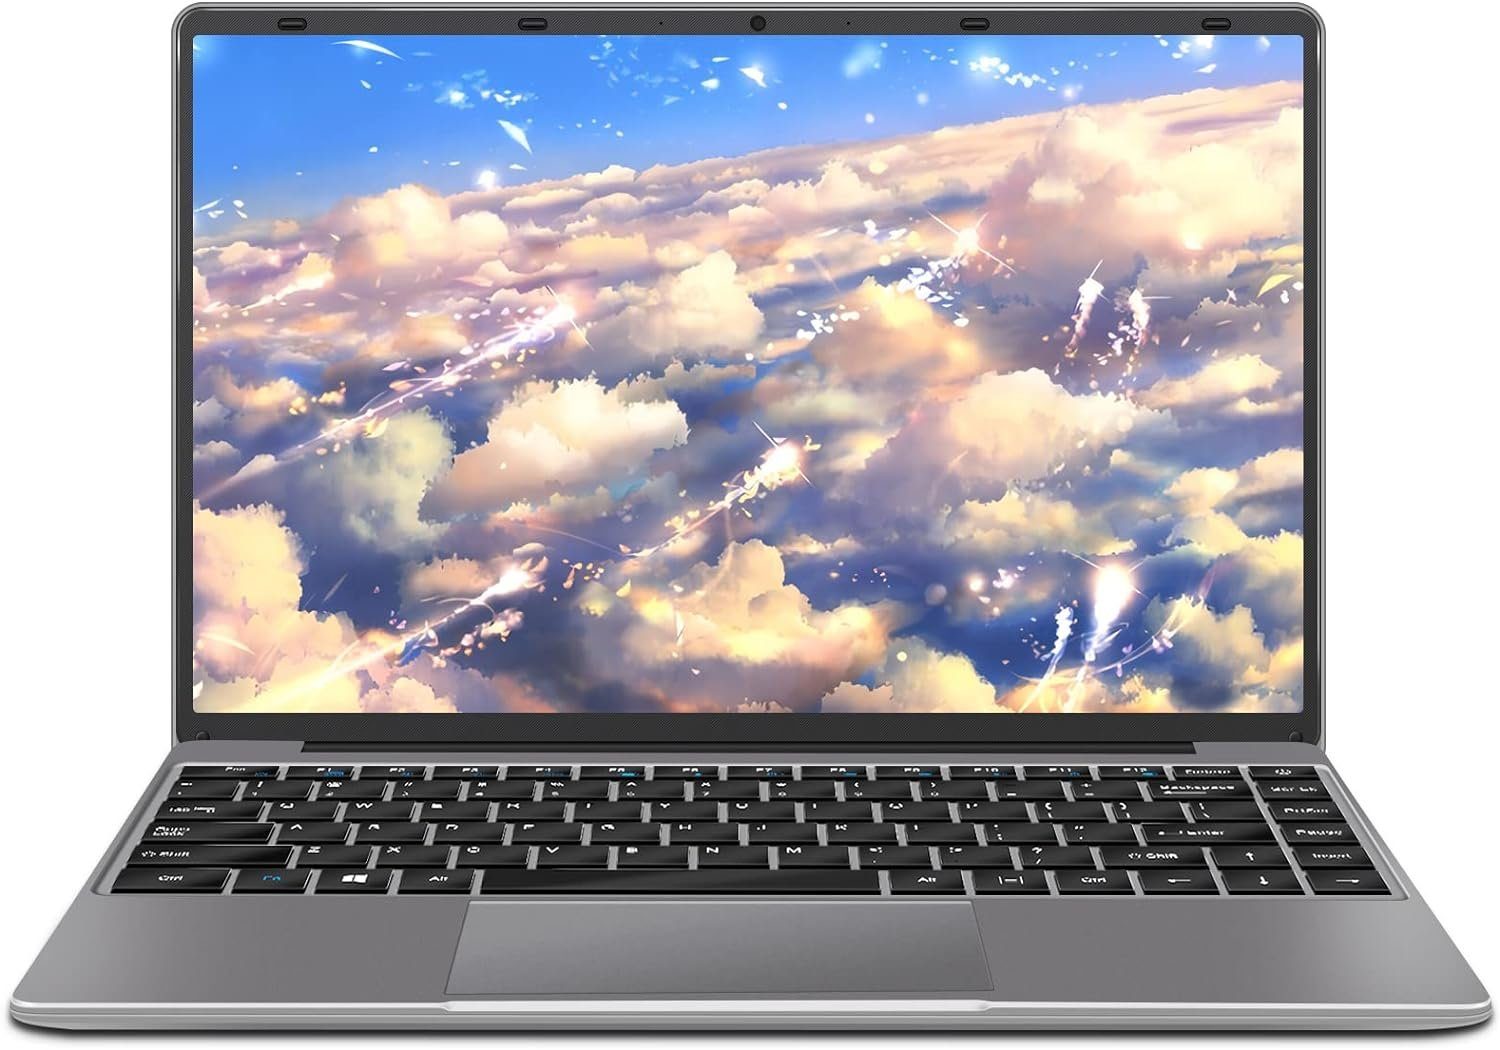 AOCWEI Laptop Celeron N4020 up to 2.8 GHz Notebook (Intel Celeron, N4020, 128 GB SSD, mit WiFi 2.4G+5G Bluetooth HDMI kabelloserMaus Deutscher Tastatur)